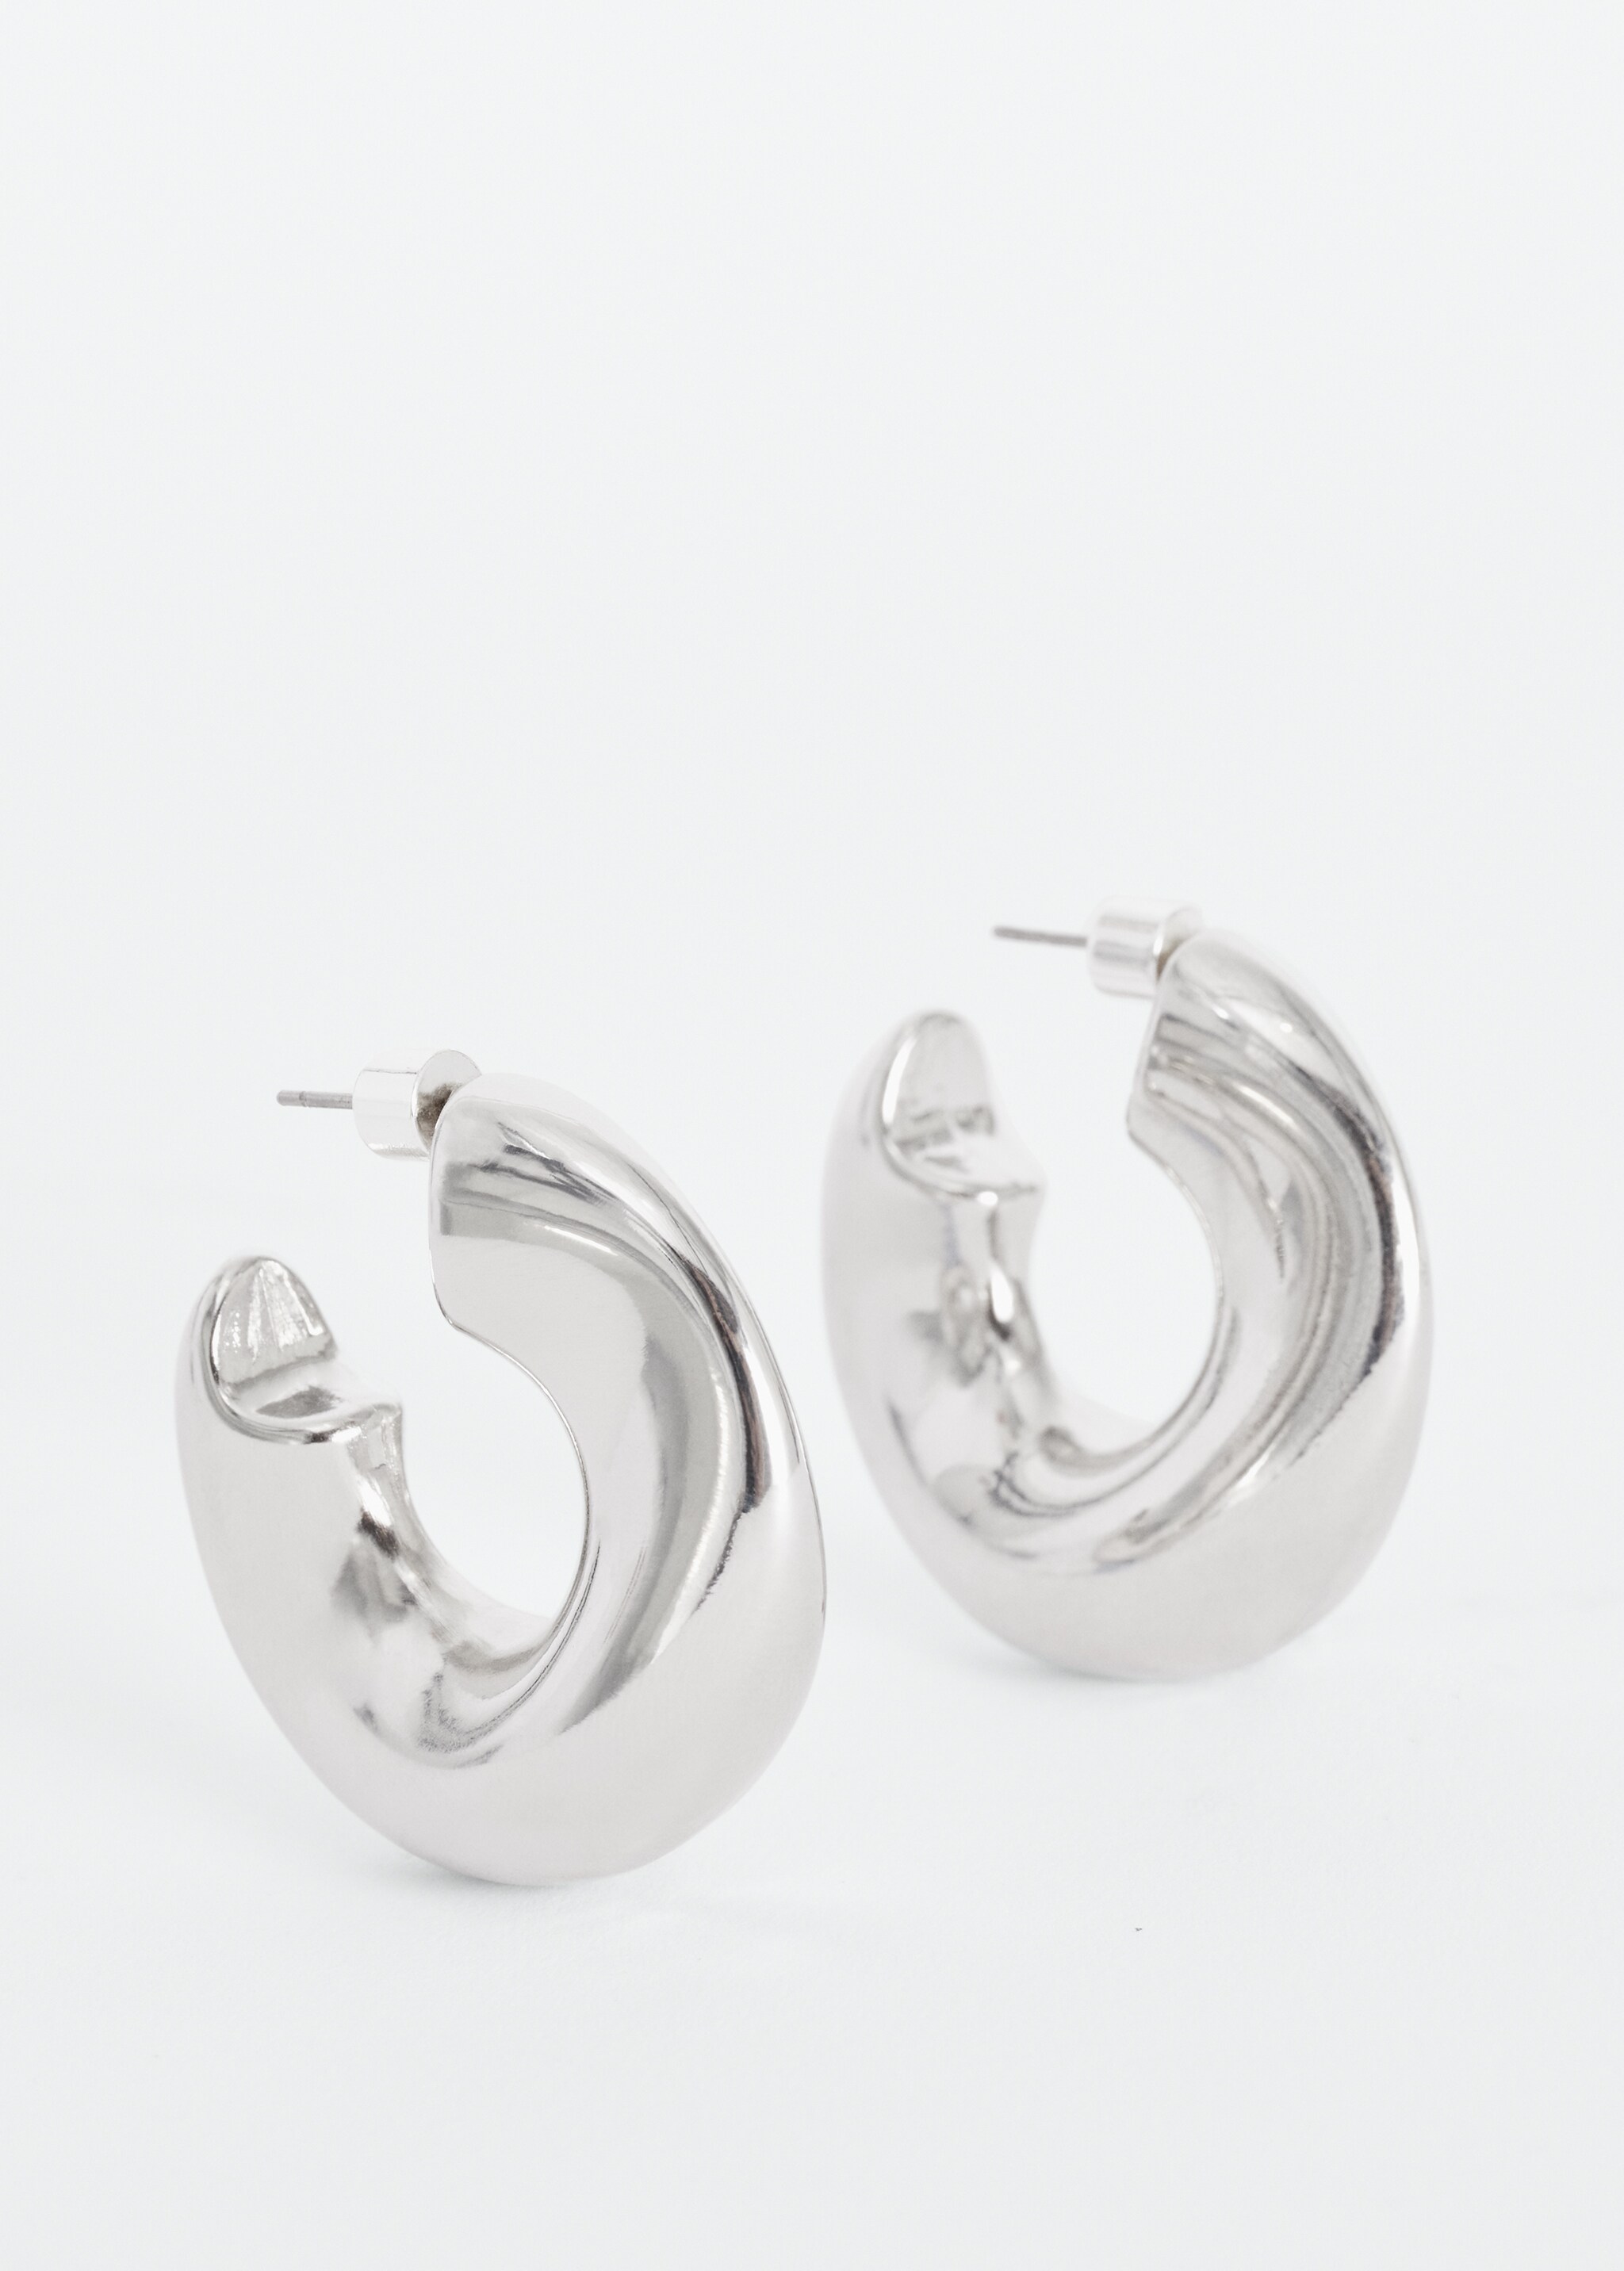 Metallic hoop earrings - Medium plane